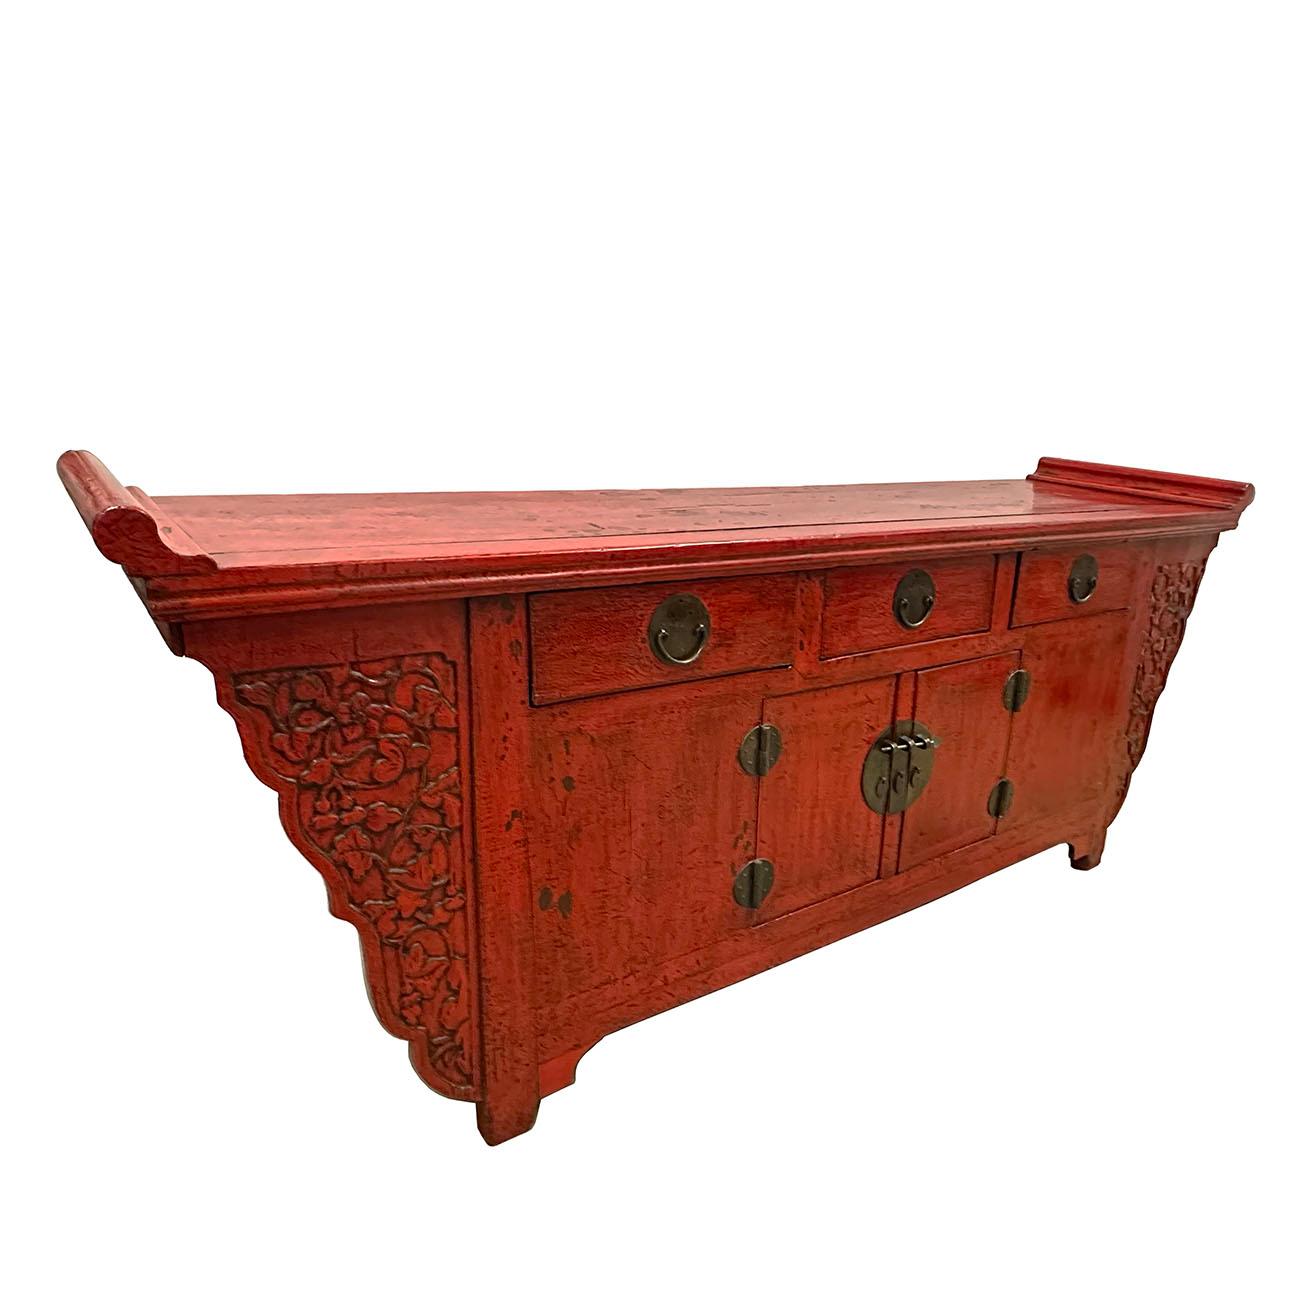 Ce meuble d'autel/ table-buffet chinois ancien a été fabriqué en bois d'orme massif avec une finition laquée rouge et de magnifiques sculptures ouvertes sur les deux côtés. Il comporte 3 tiroirs sur le dessus, un meuble à deux portes ouvrantes à